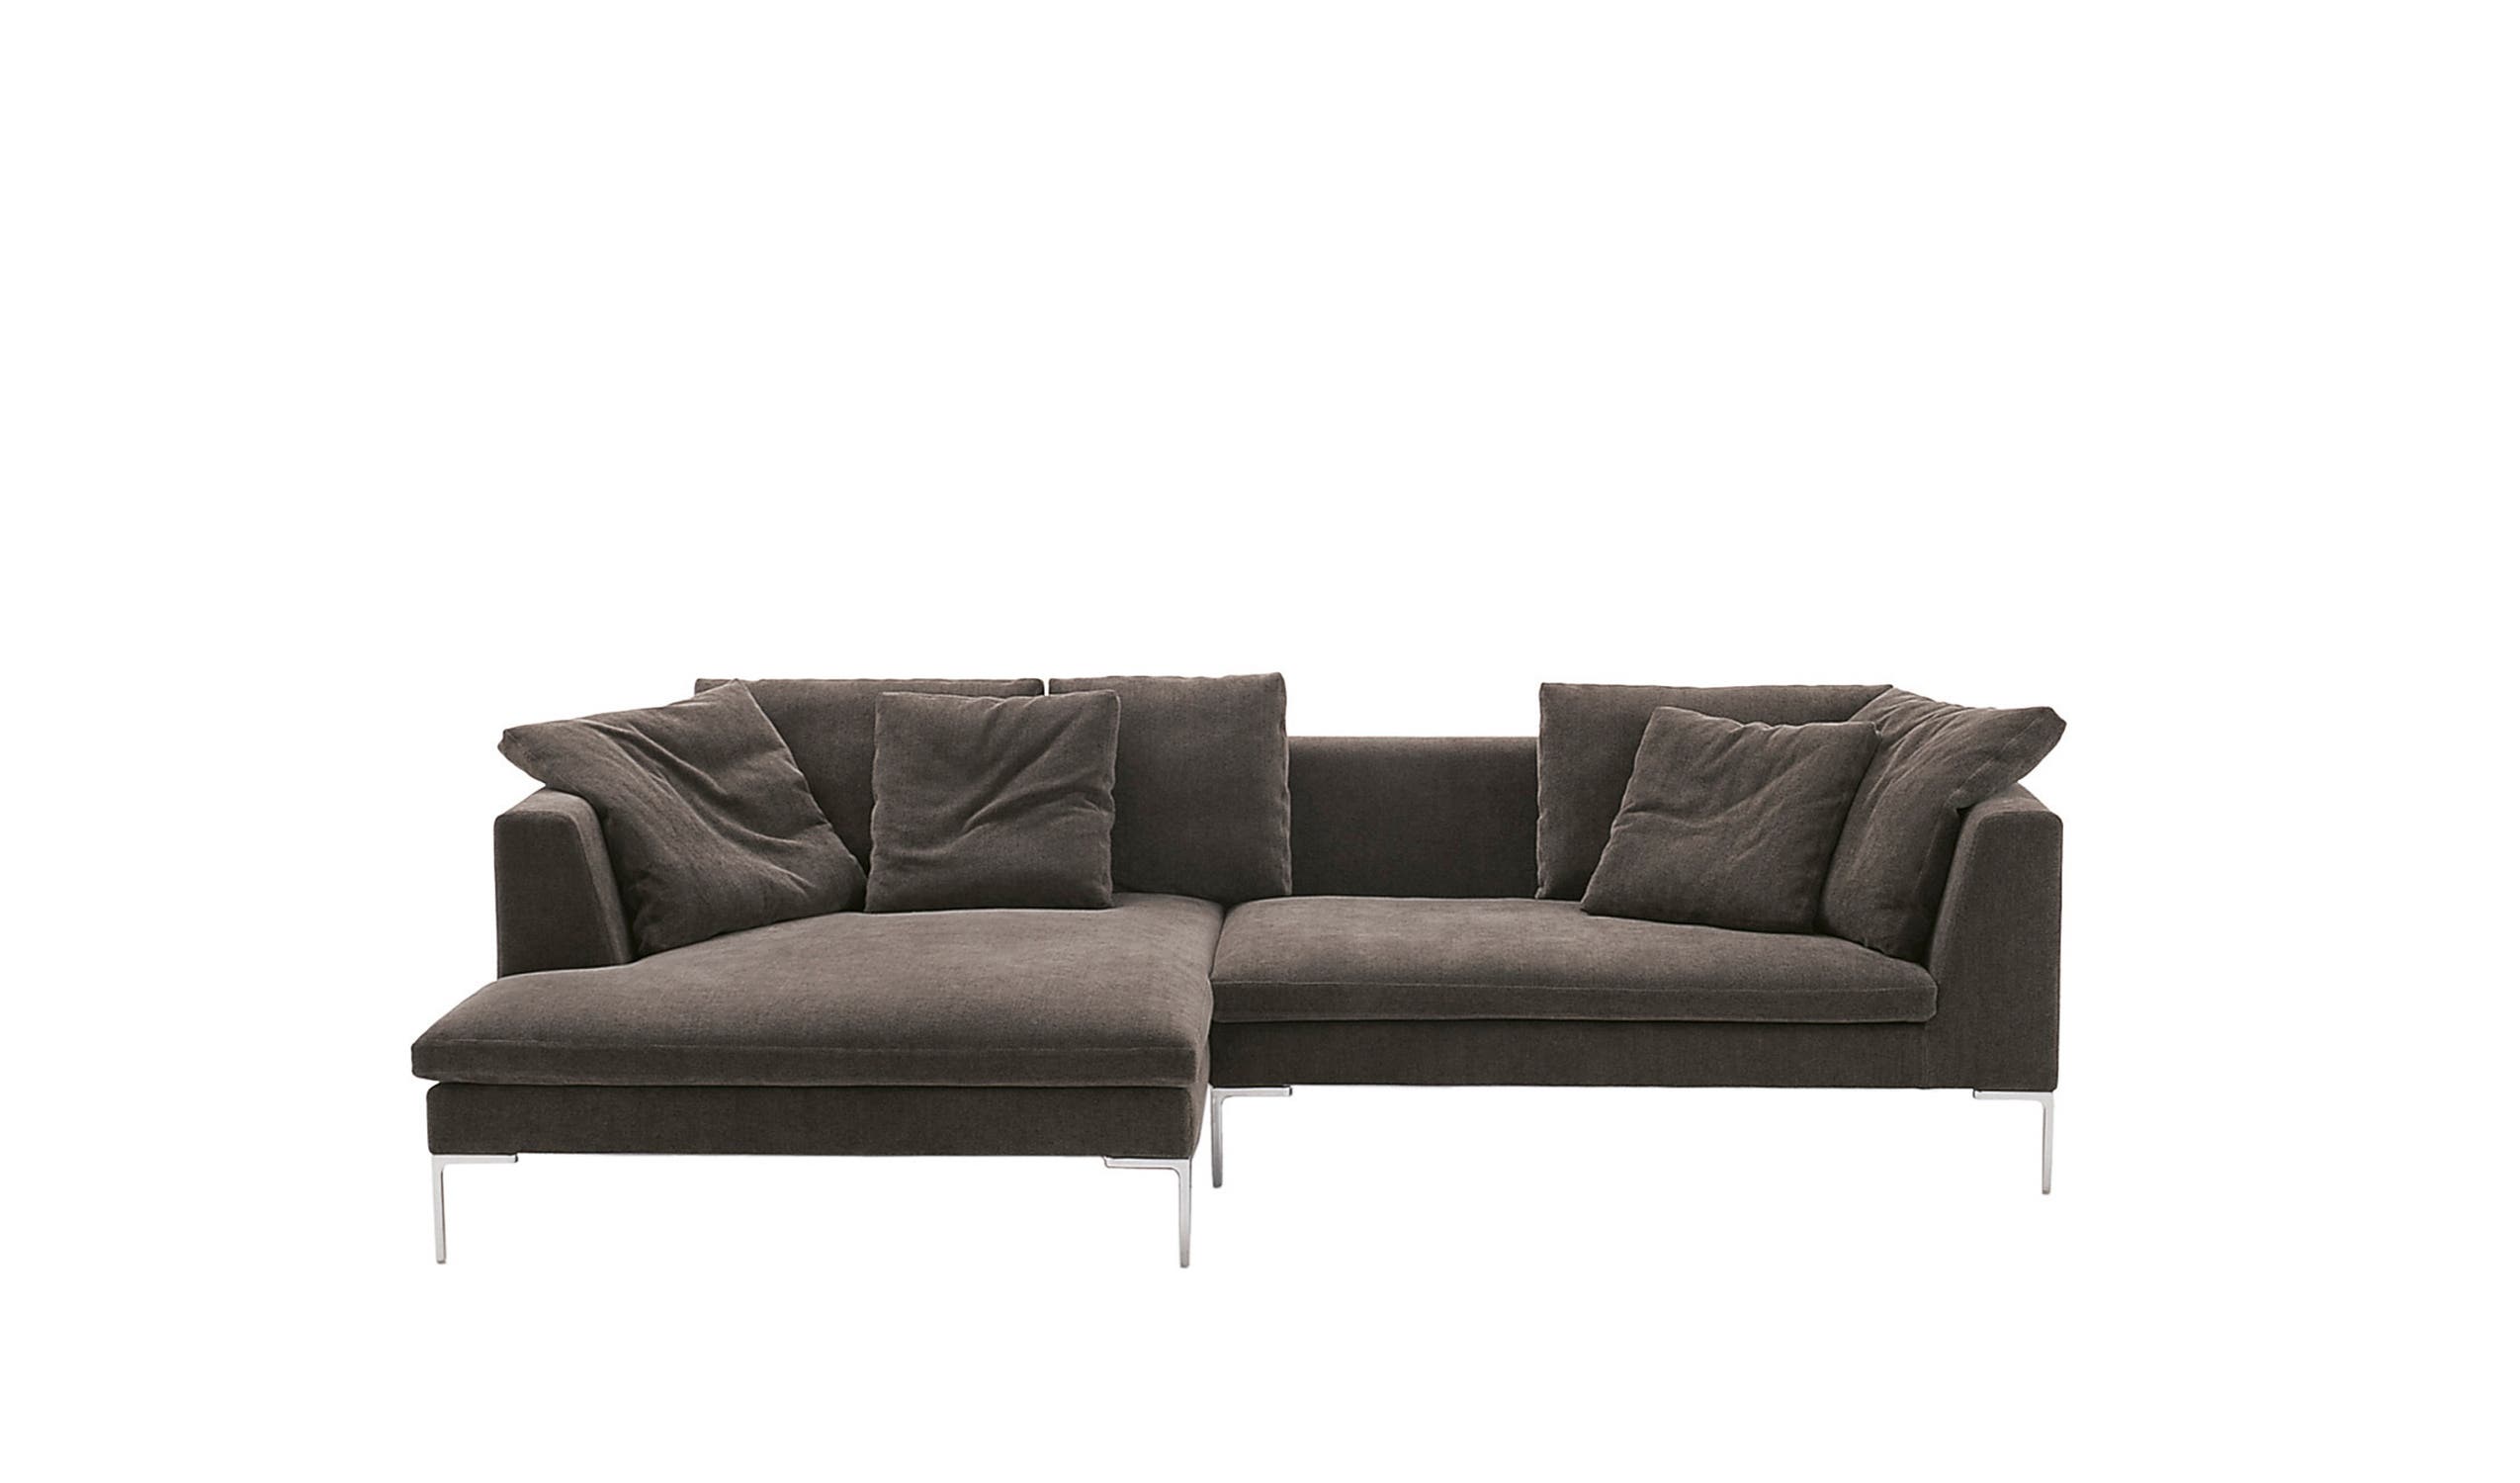 Modern designer italian sofas - Charles Large Sofas